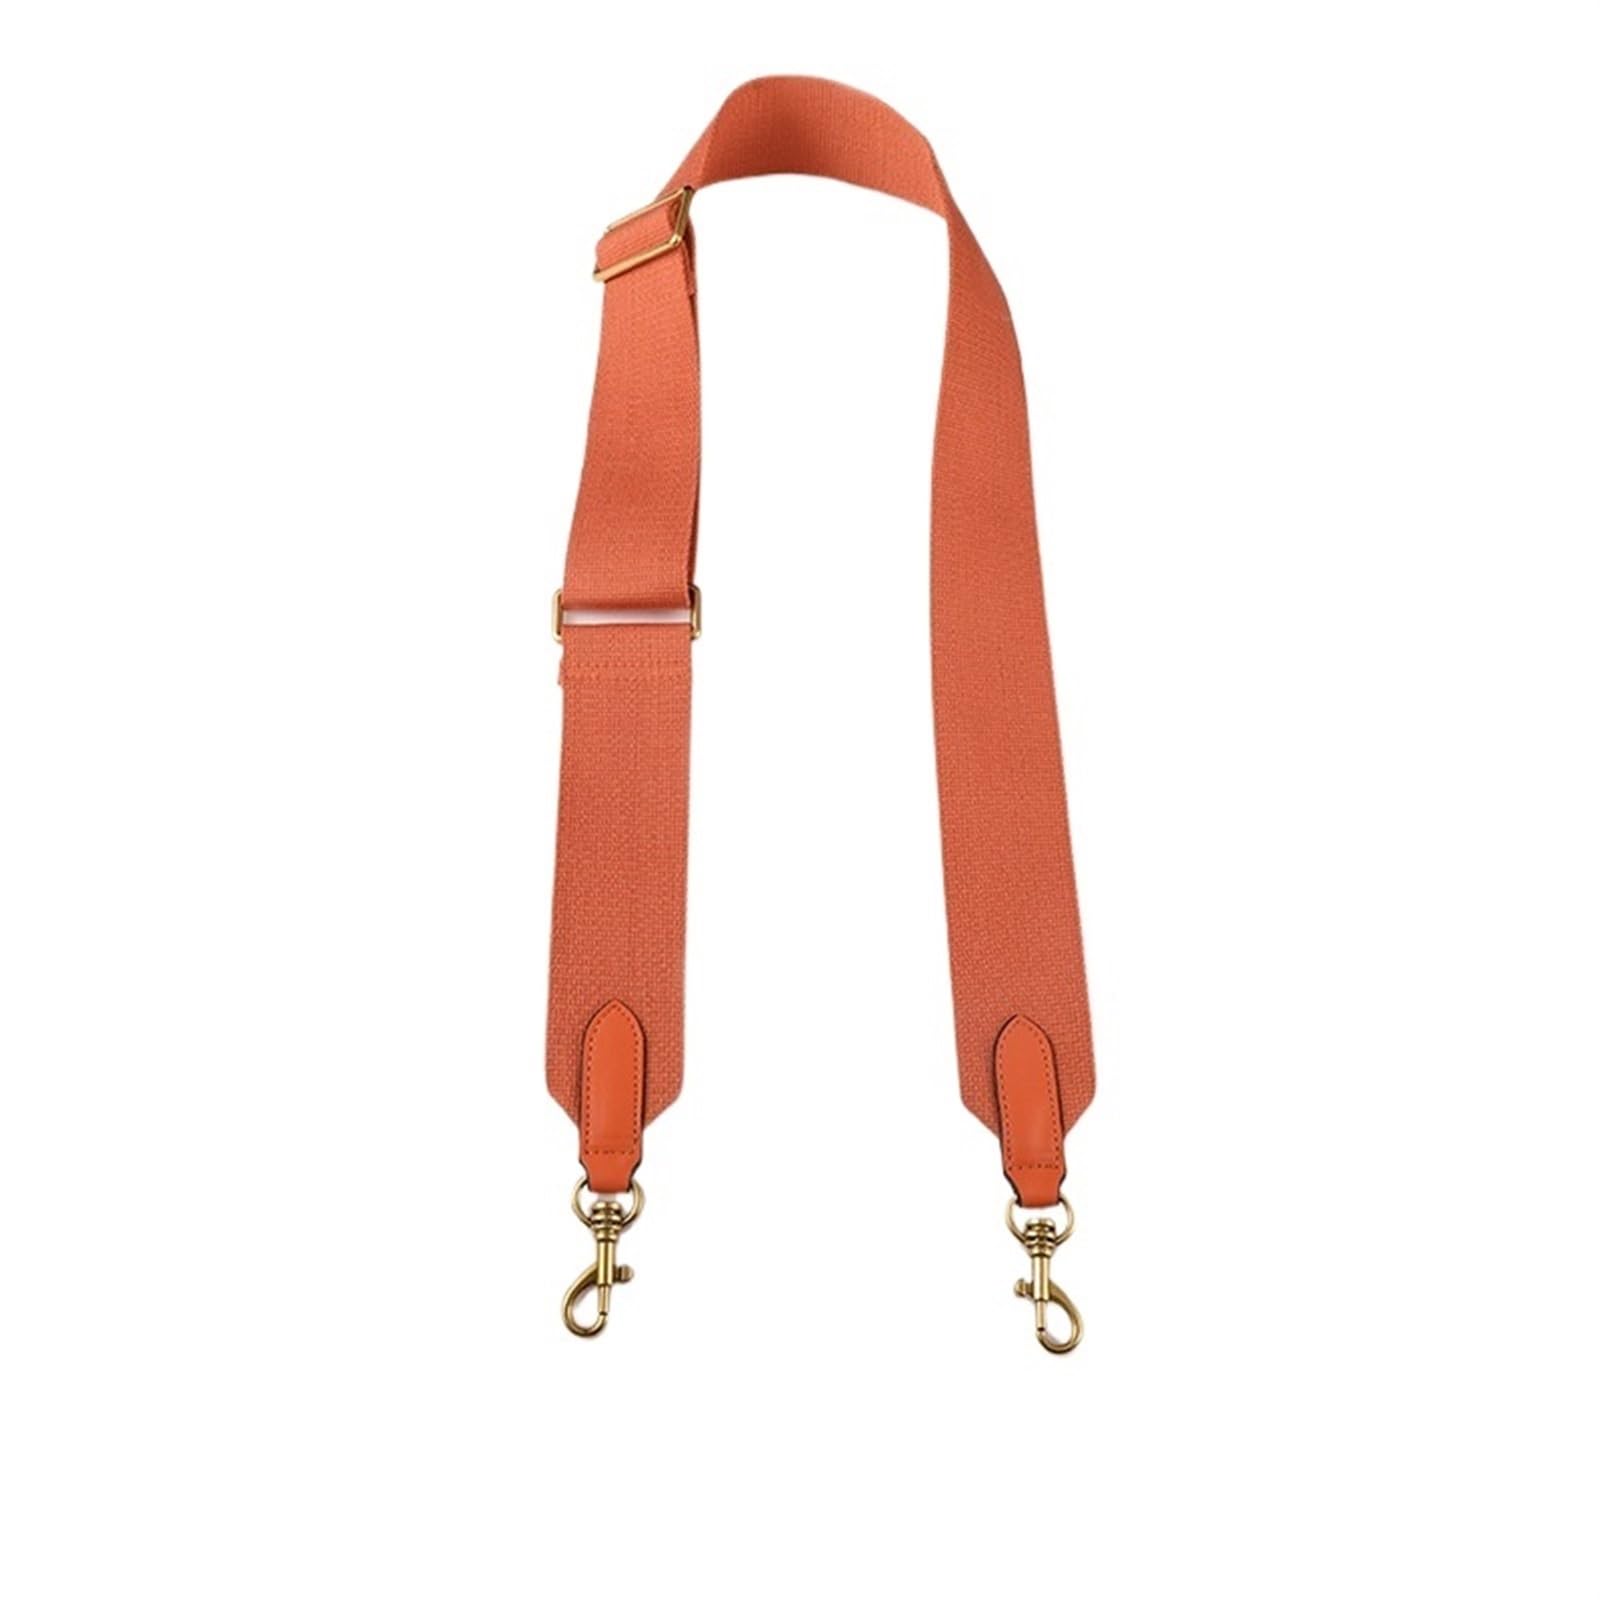 Taschengurt Breit zum Wechseln Bag Canvas Shoulder Strap Handbag Accessories Bucket Bag Replacement Bag Strap Adjustable Crossbody Bag Shoulder Straps(Orange,Silver hook) von LYHYDMA